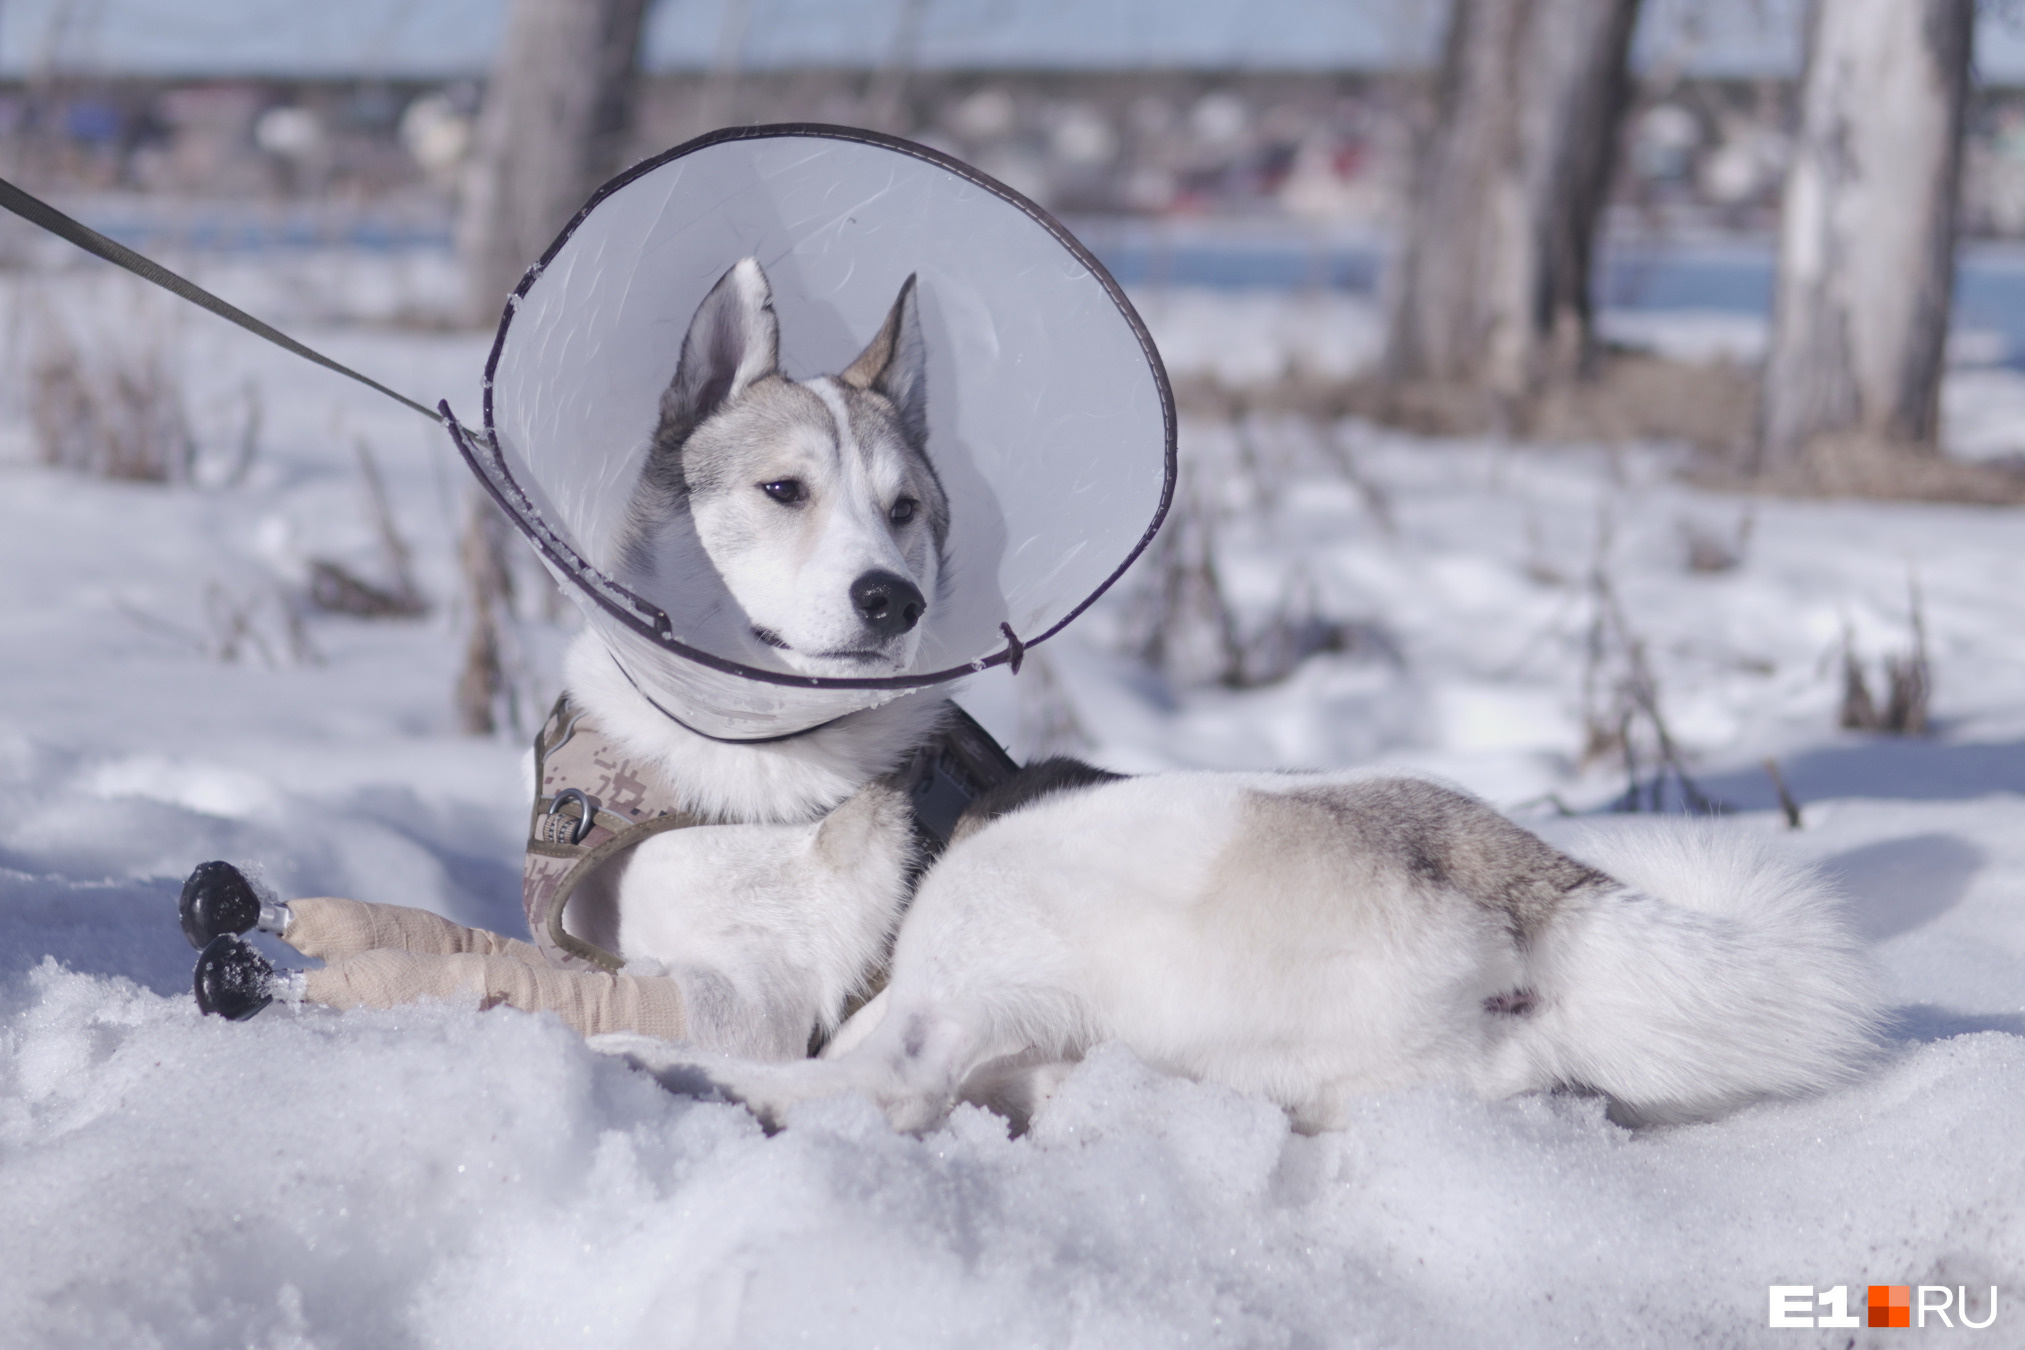 Лайка на титановых лапах: студент из Екатеринбурга помог сделать протезы собаке, попавшей в капкан